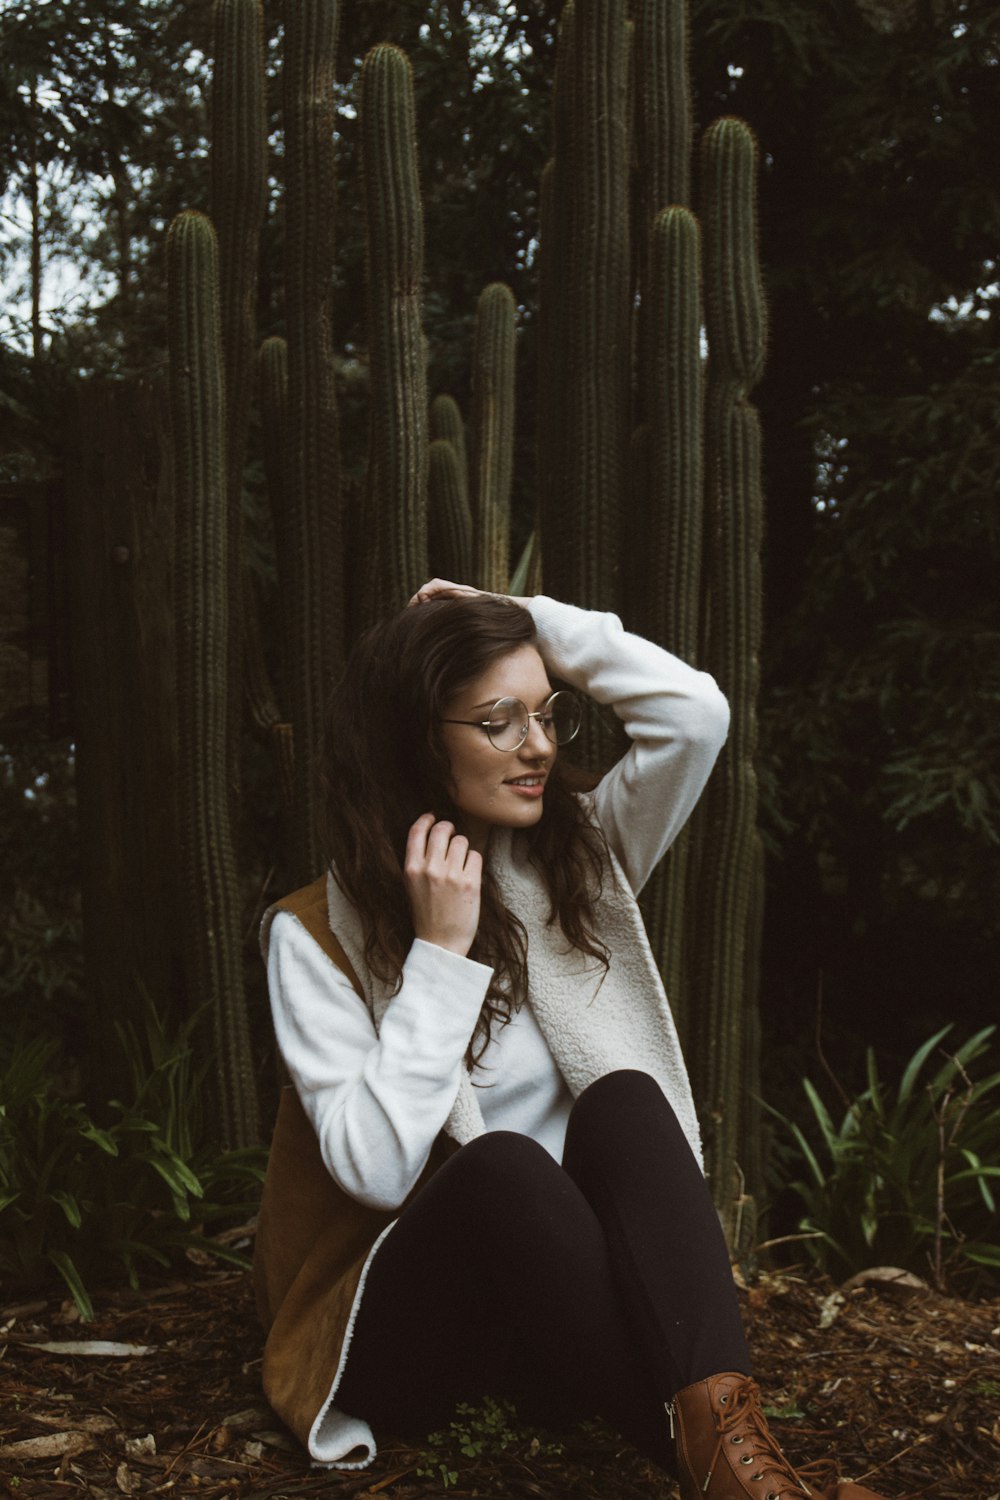 Femme souriante portant un manteau brun et blanc assise à côté de plantes de cactus verts